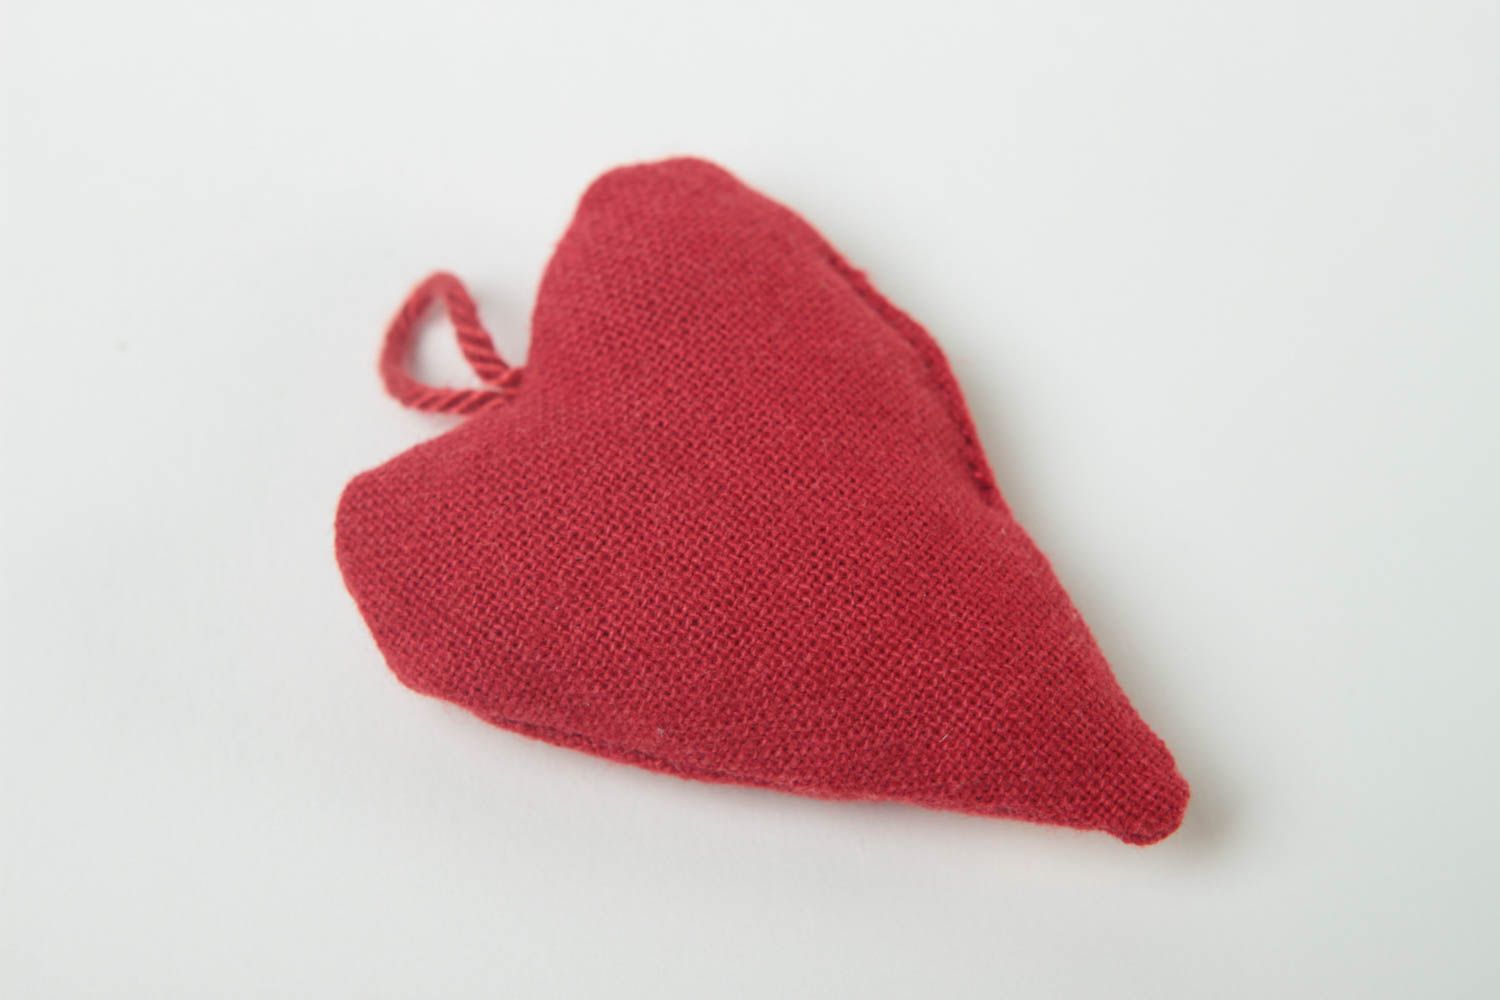 Corazón de peluche hecho a mano juguete para niño elemento decorativo  foto 3